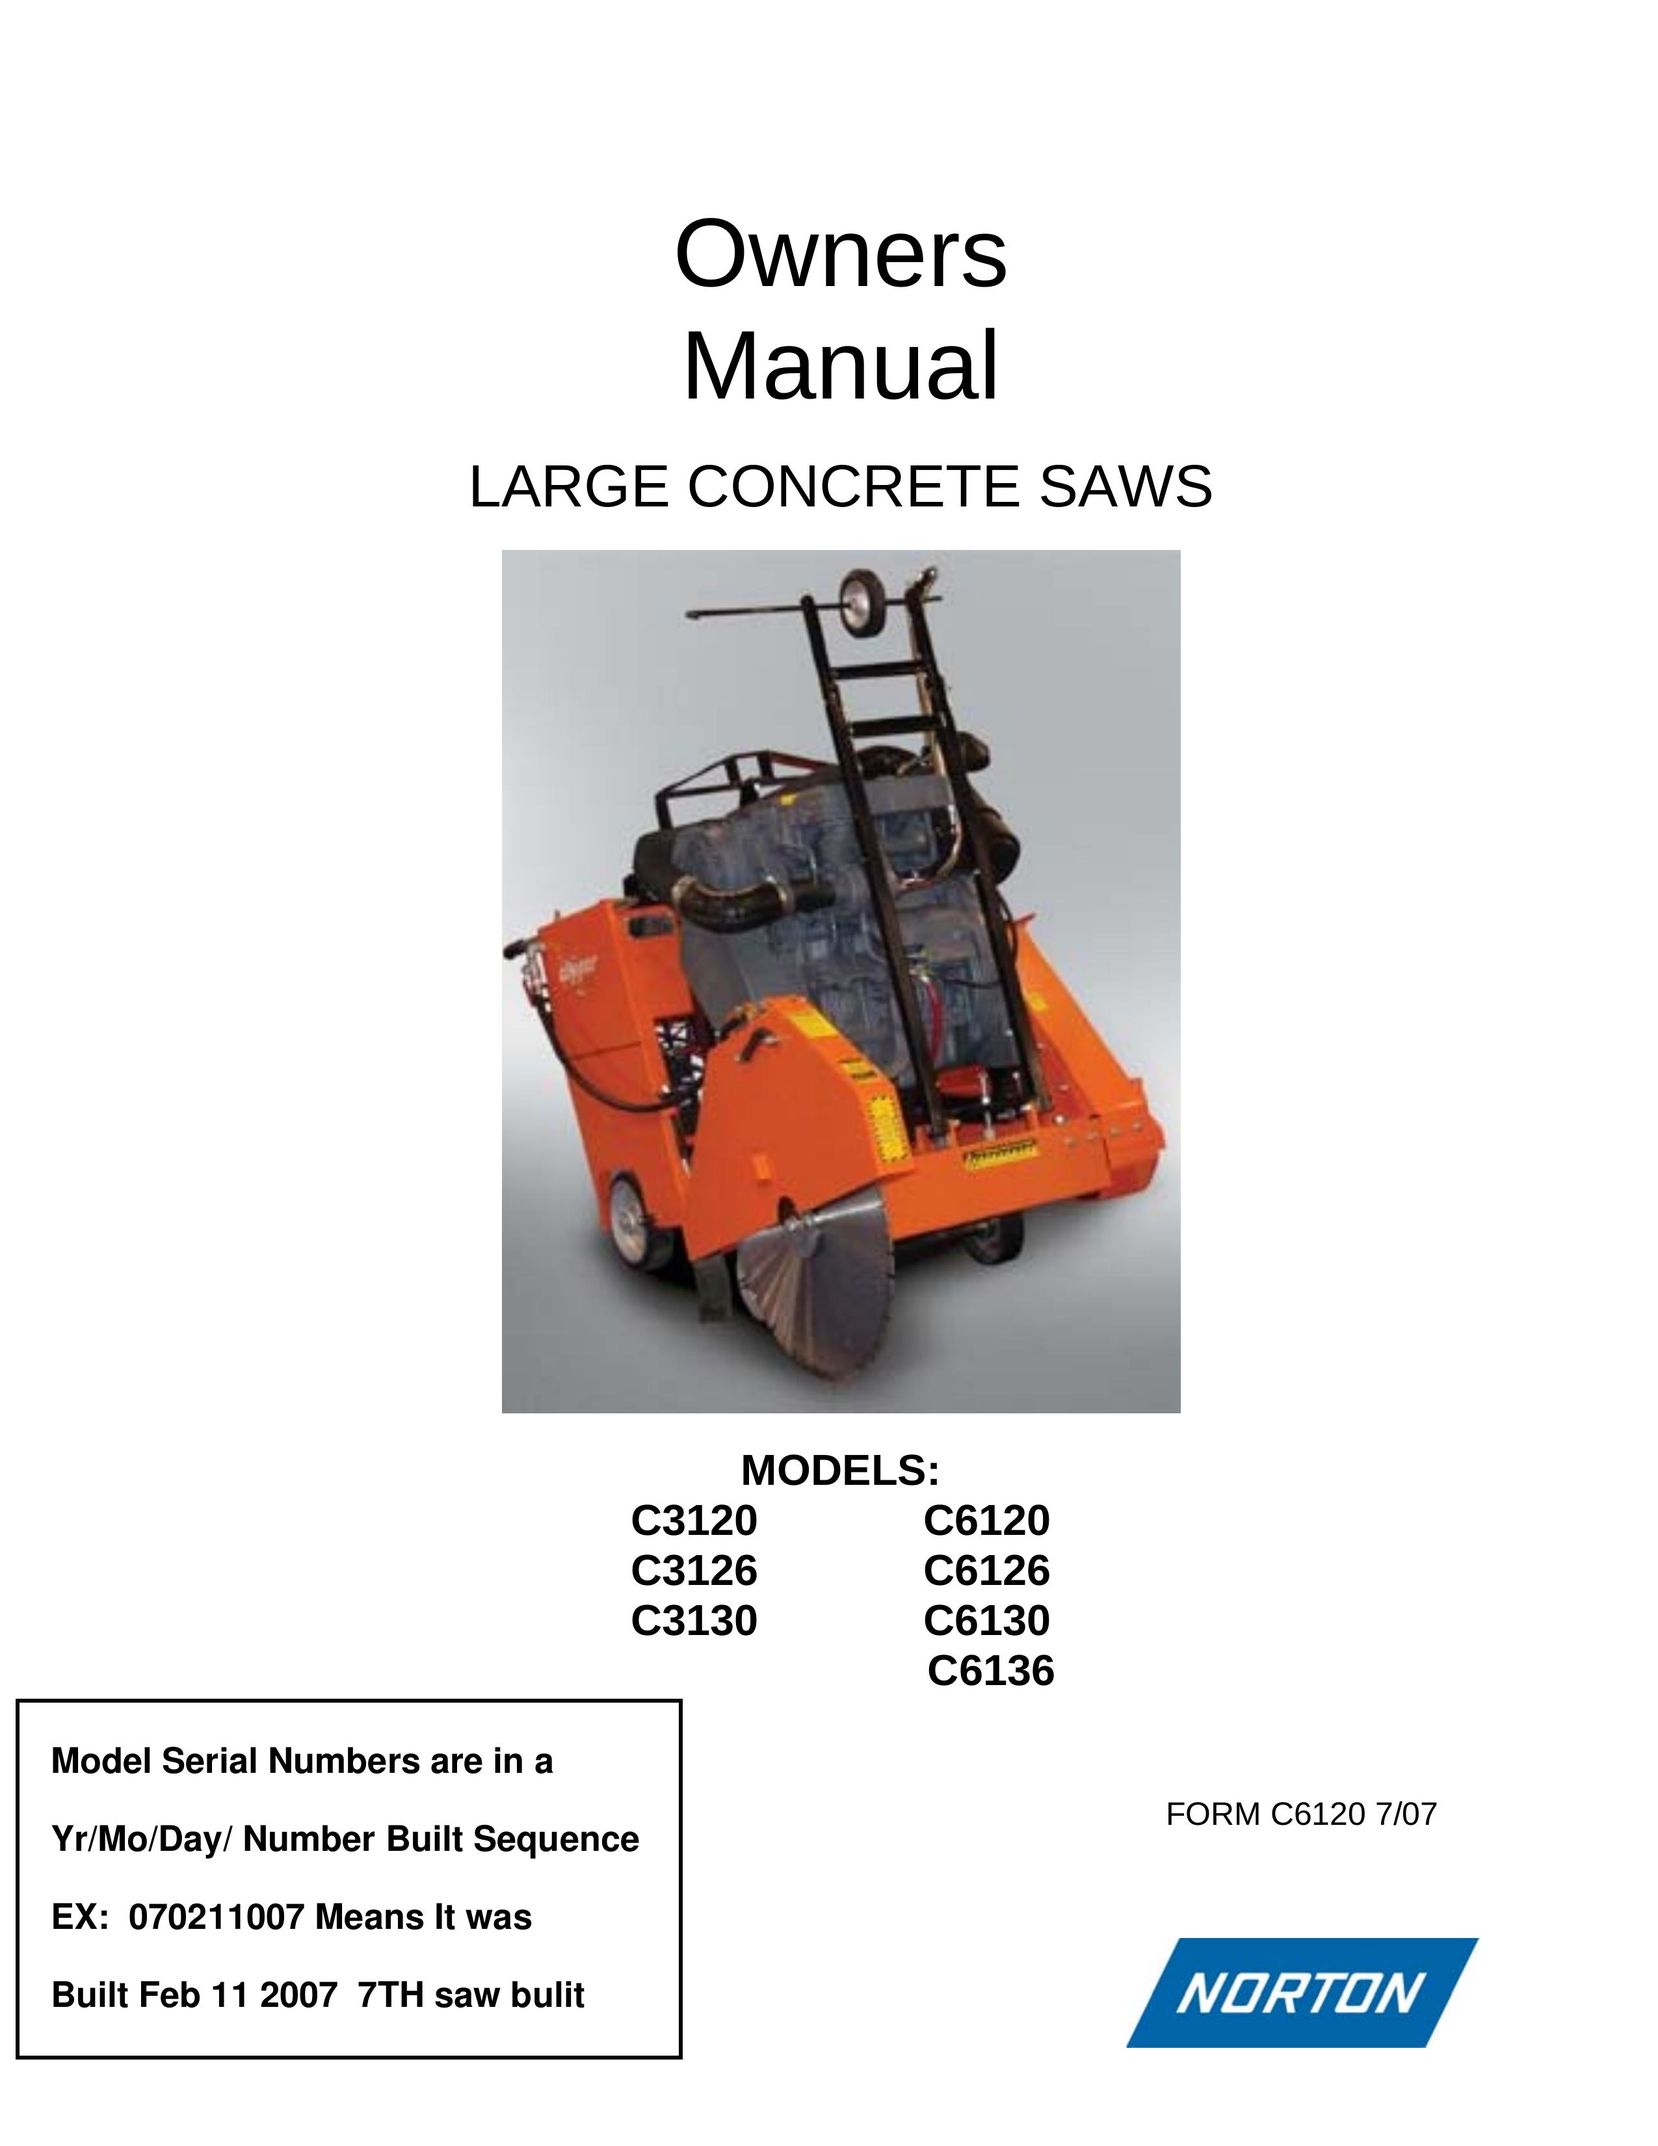 Norton Abrasives C3120 Saw User Manual